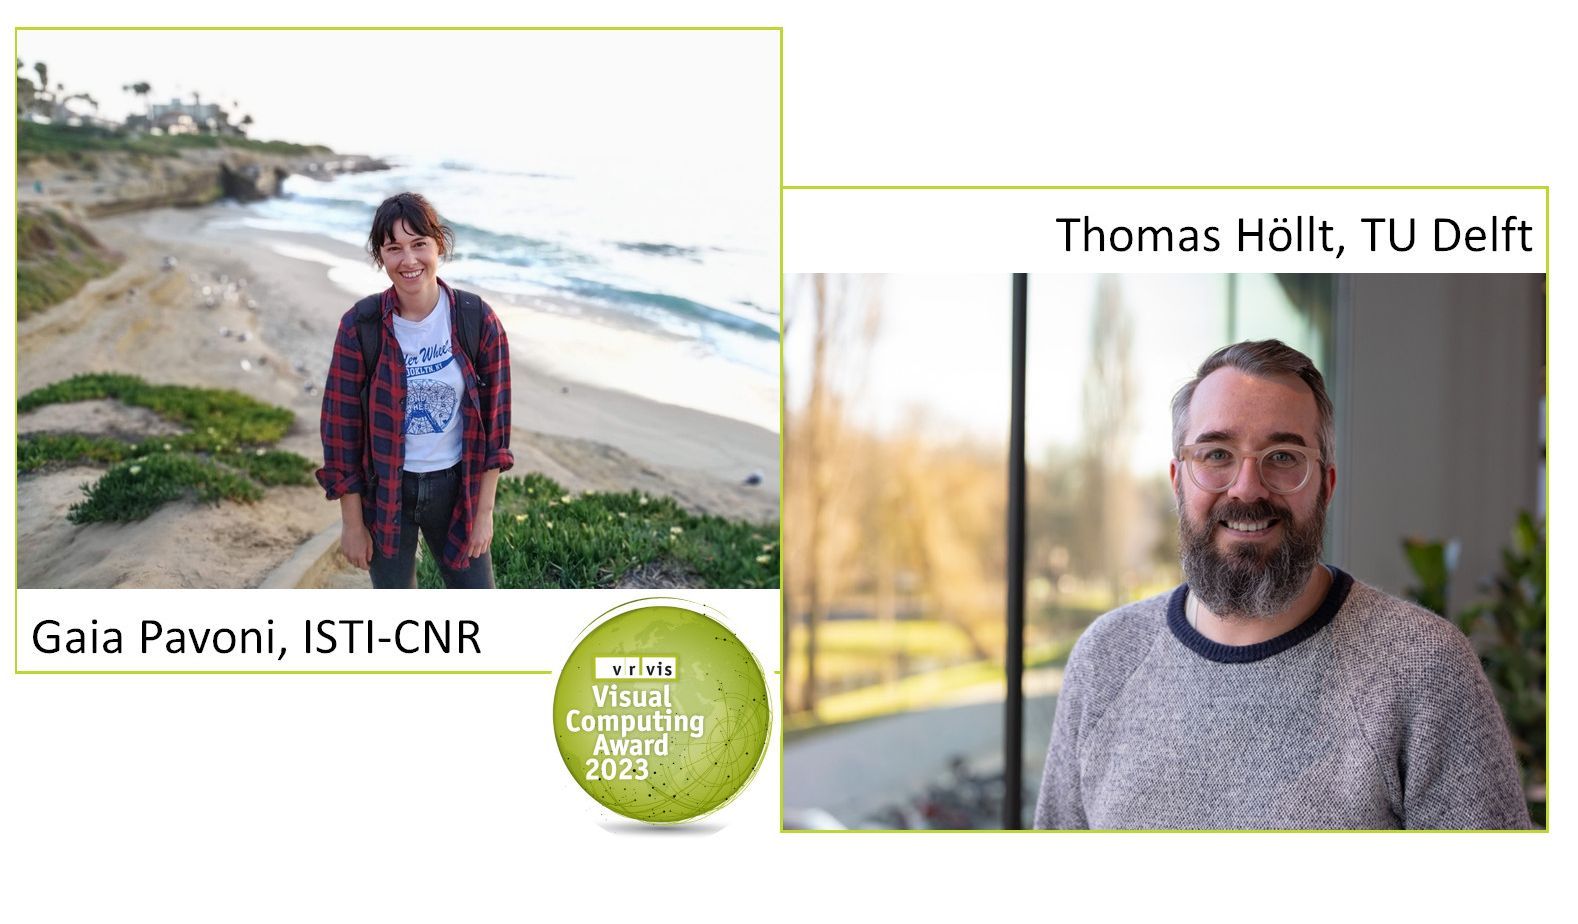 Zwei Portraitfotos von Gaia Pavoni und Thomas Höllt nebeneinander, versehen mit einem grünen Rahmen sowie das grüne Logo des VRVis Visual Commputing Awards.